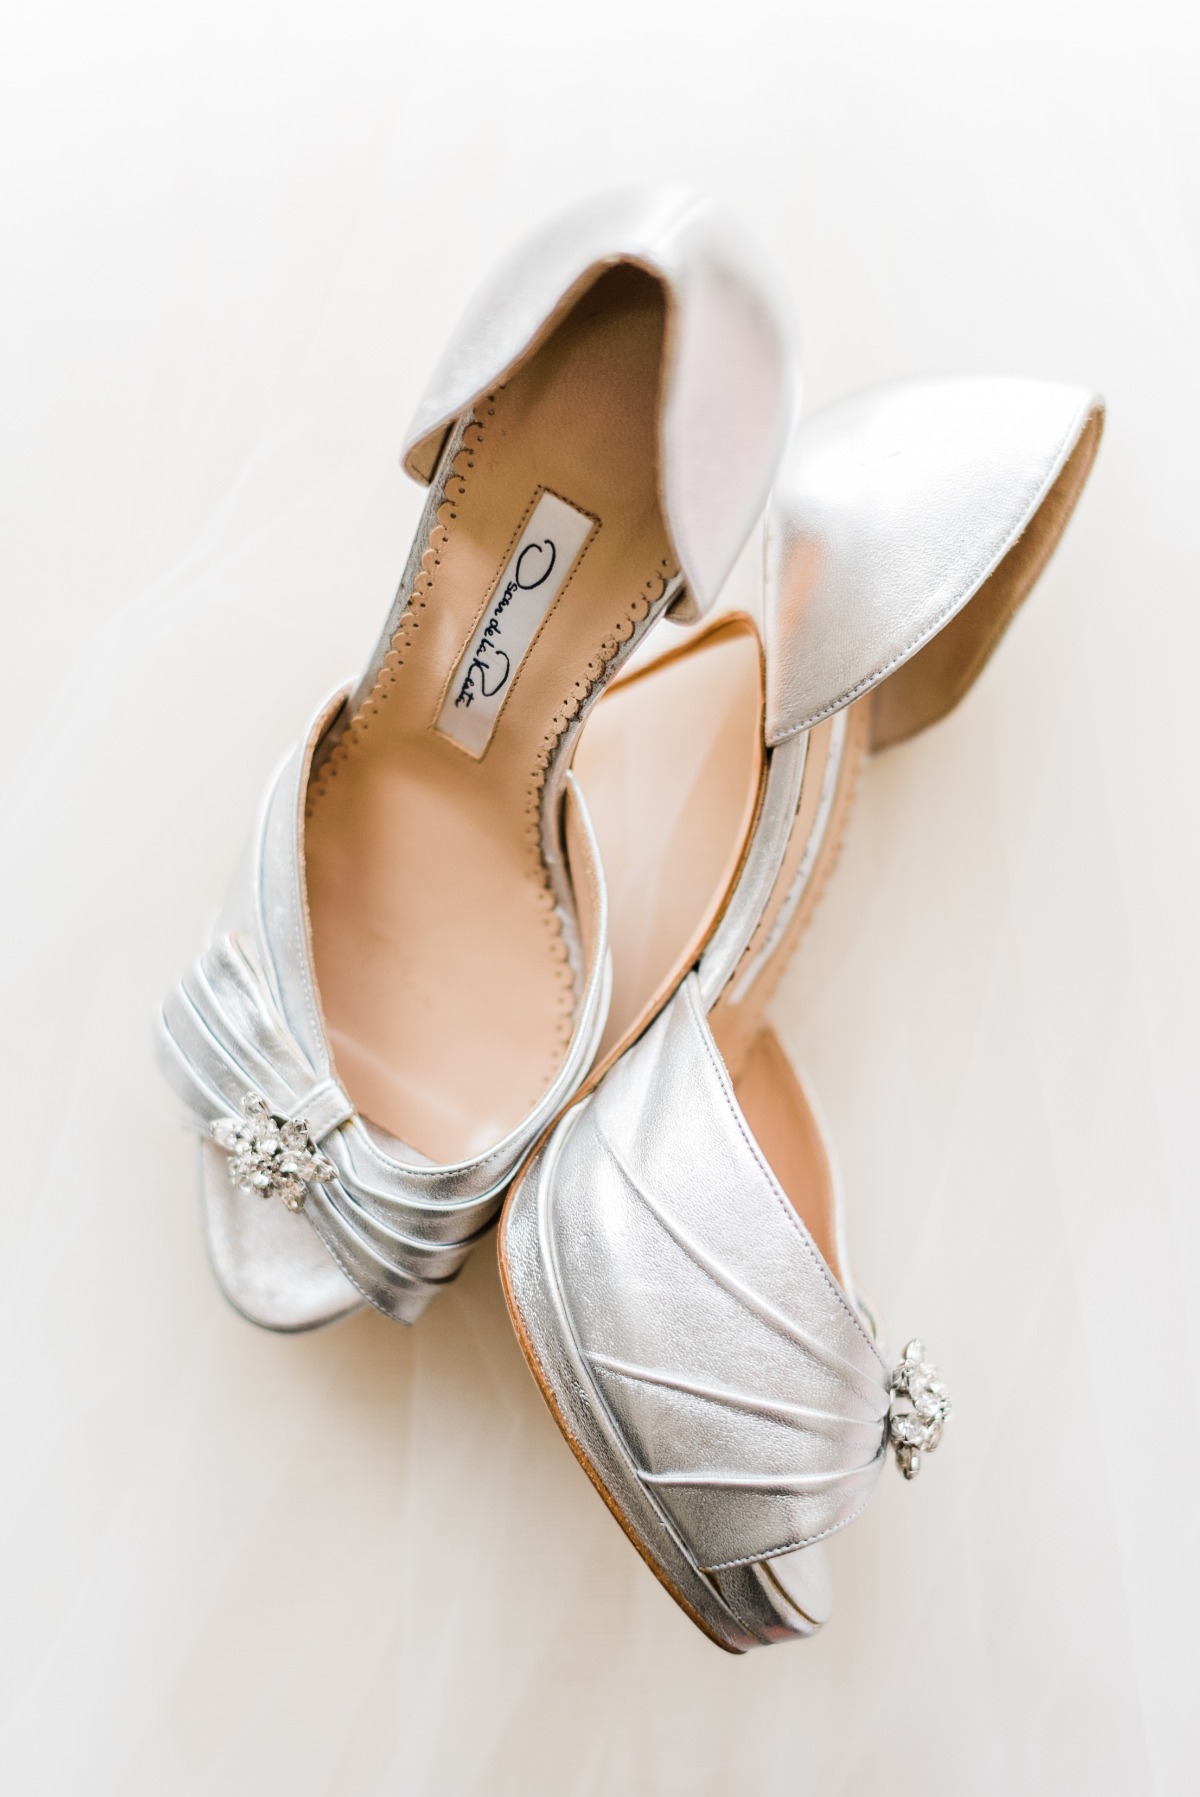 Oscar de la Renta silver heels